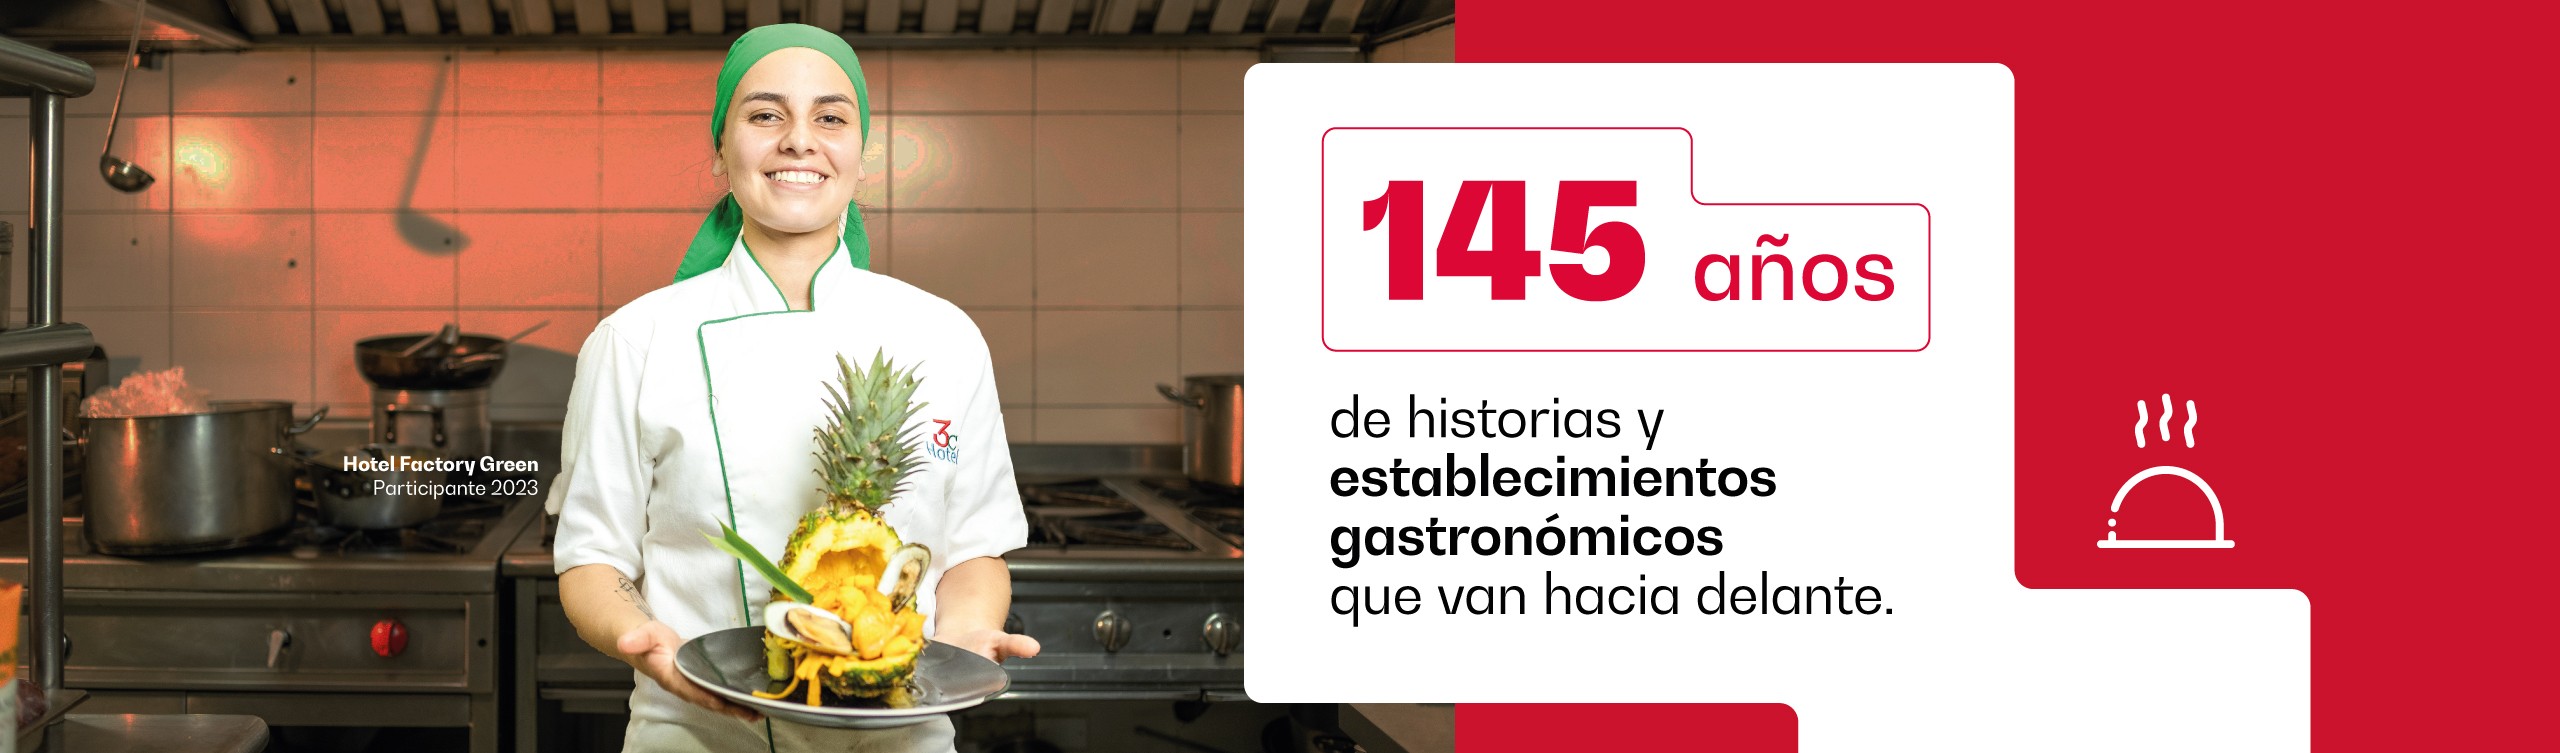 145 años de historias y establecimientos gastronómicos que van hacia adelante